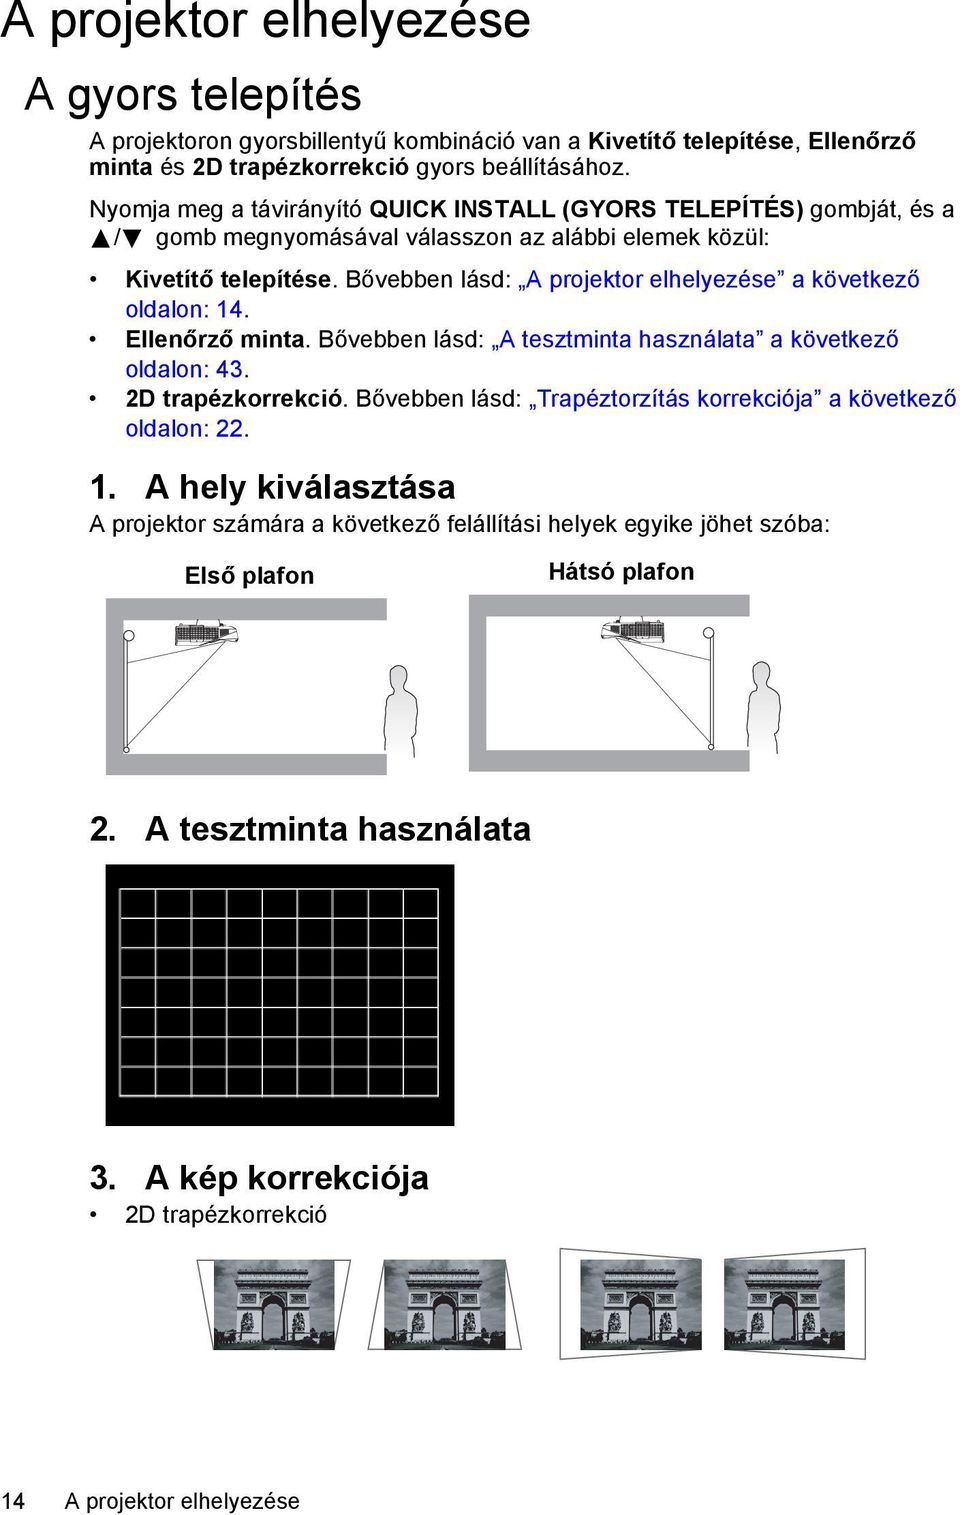 Bővebben lásd: A projektor elhelyezése a következő oldalon: 14. Ellenőrző minta. Bővebben lásd: A tesztminta használata a következő oldalon: 43. 2D trapézkorrekció.